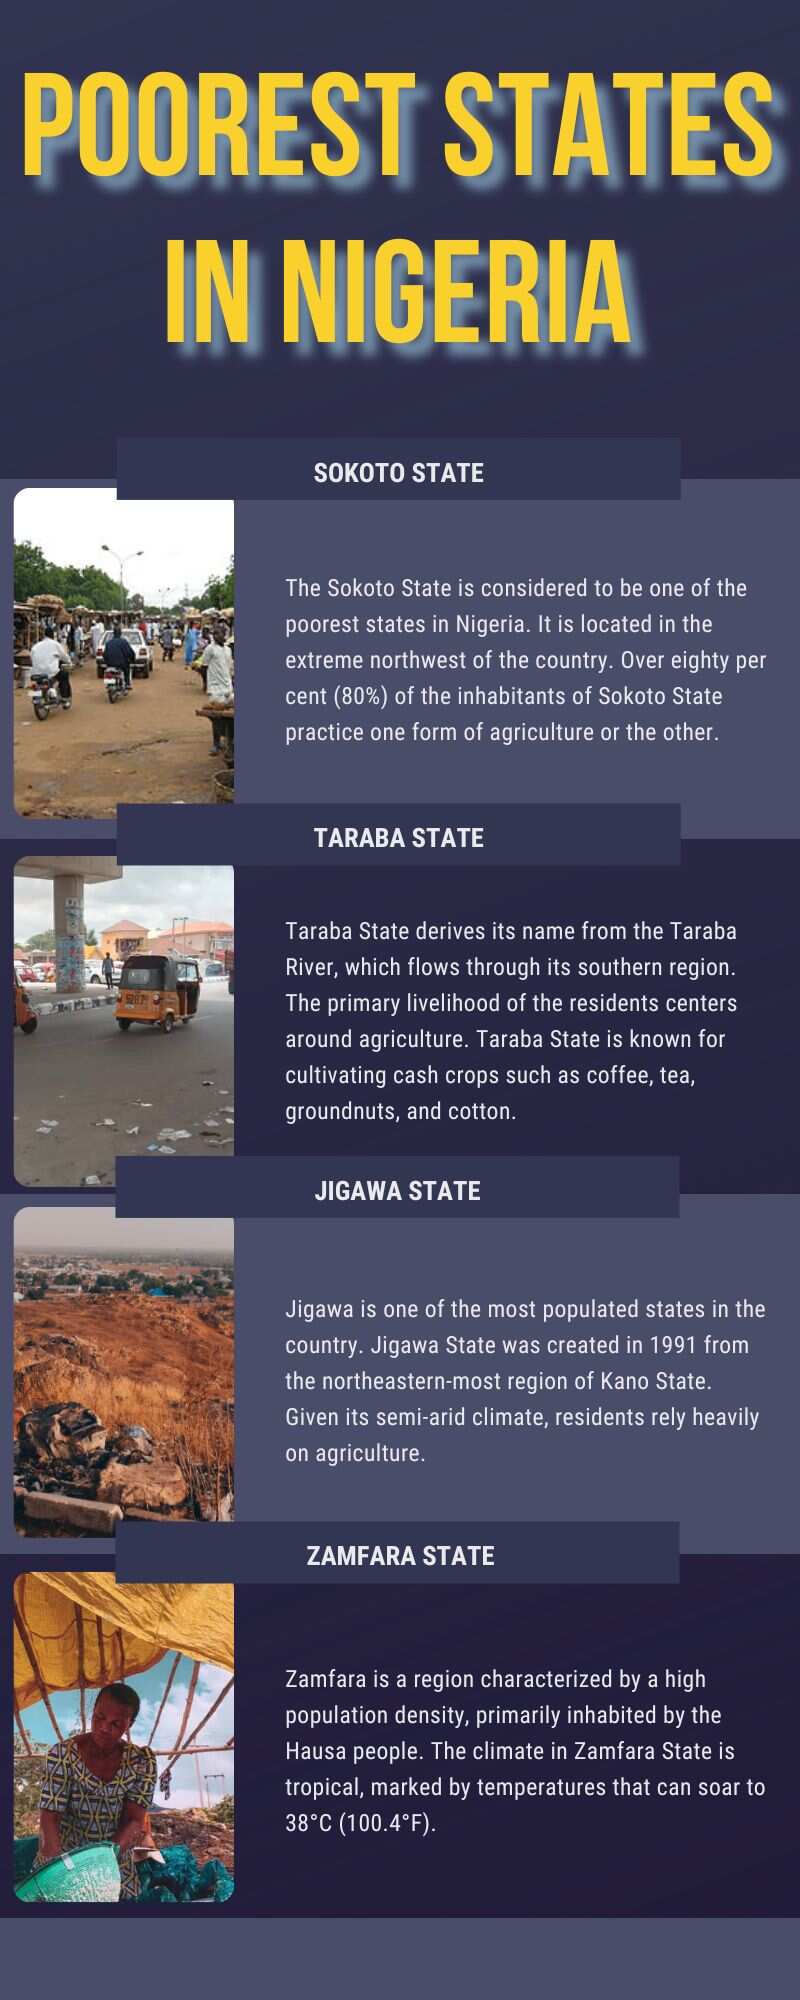 Poorest states in Nigeria